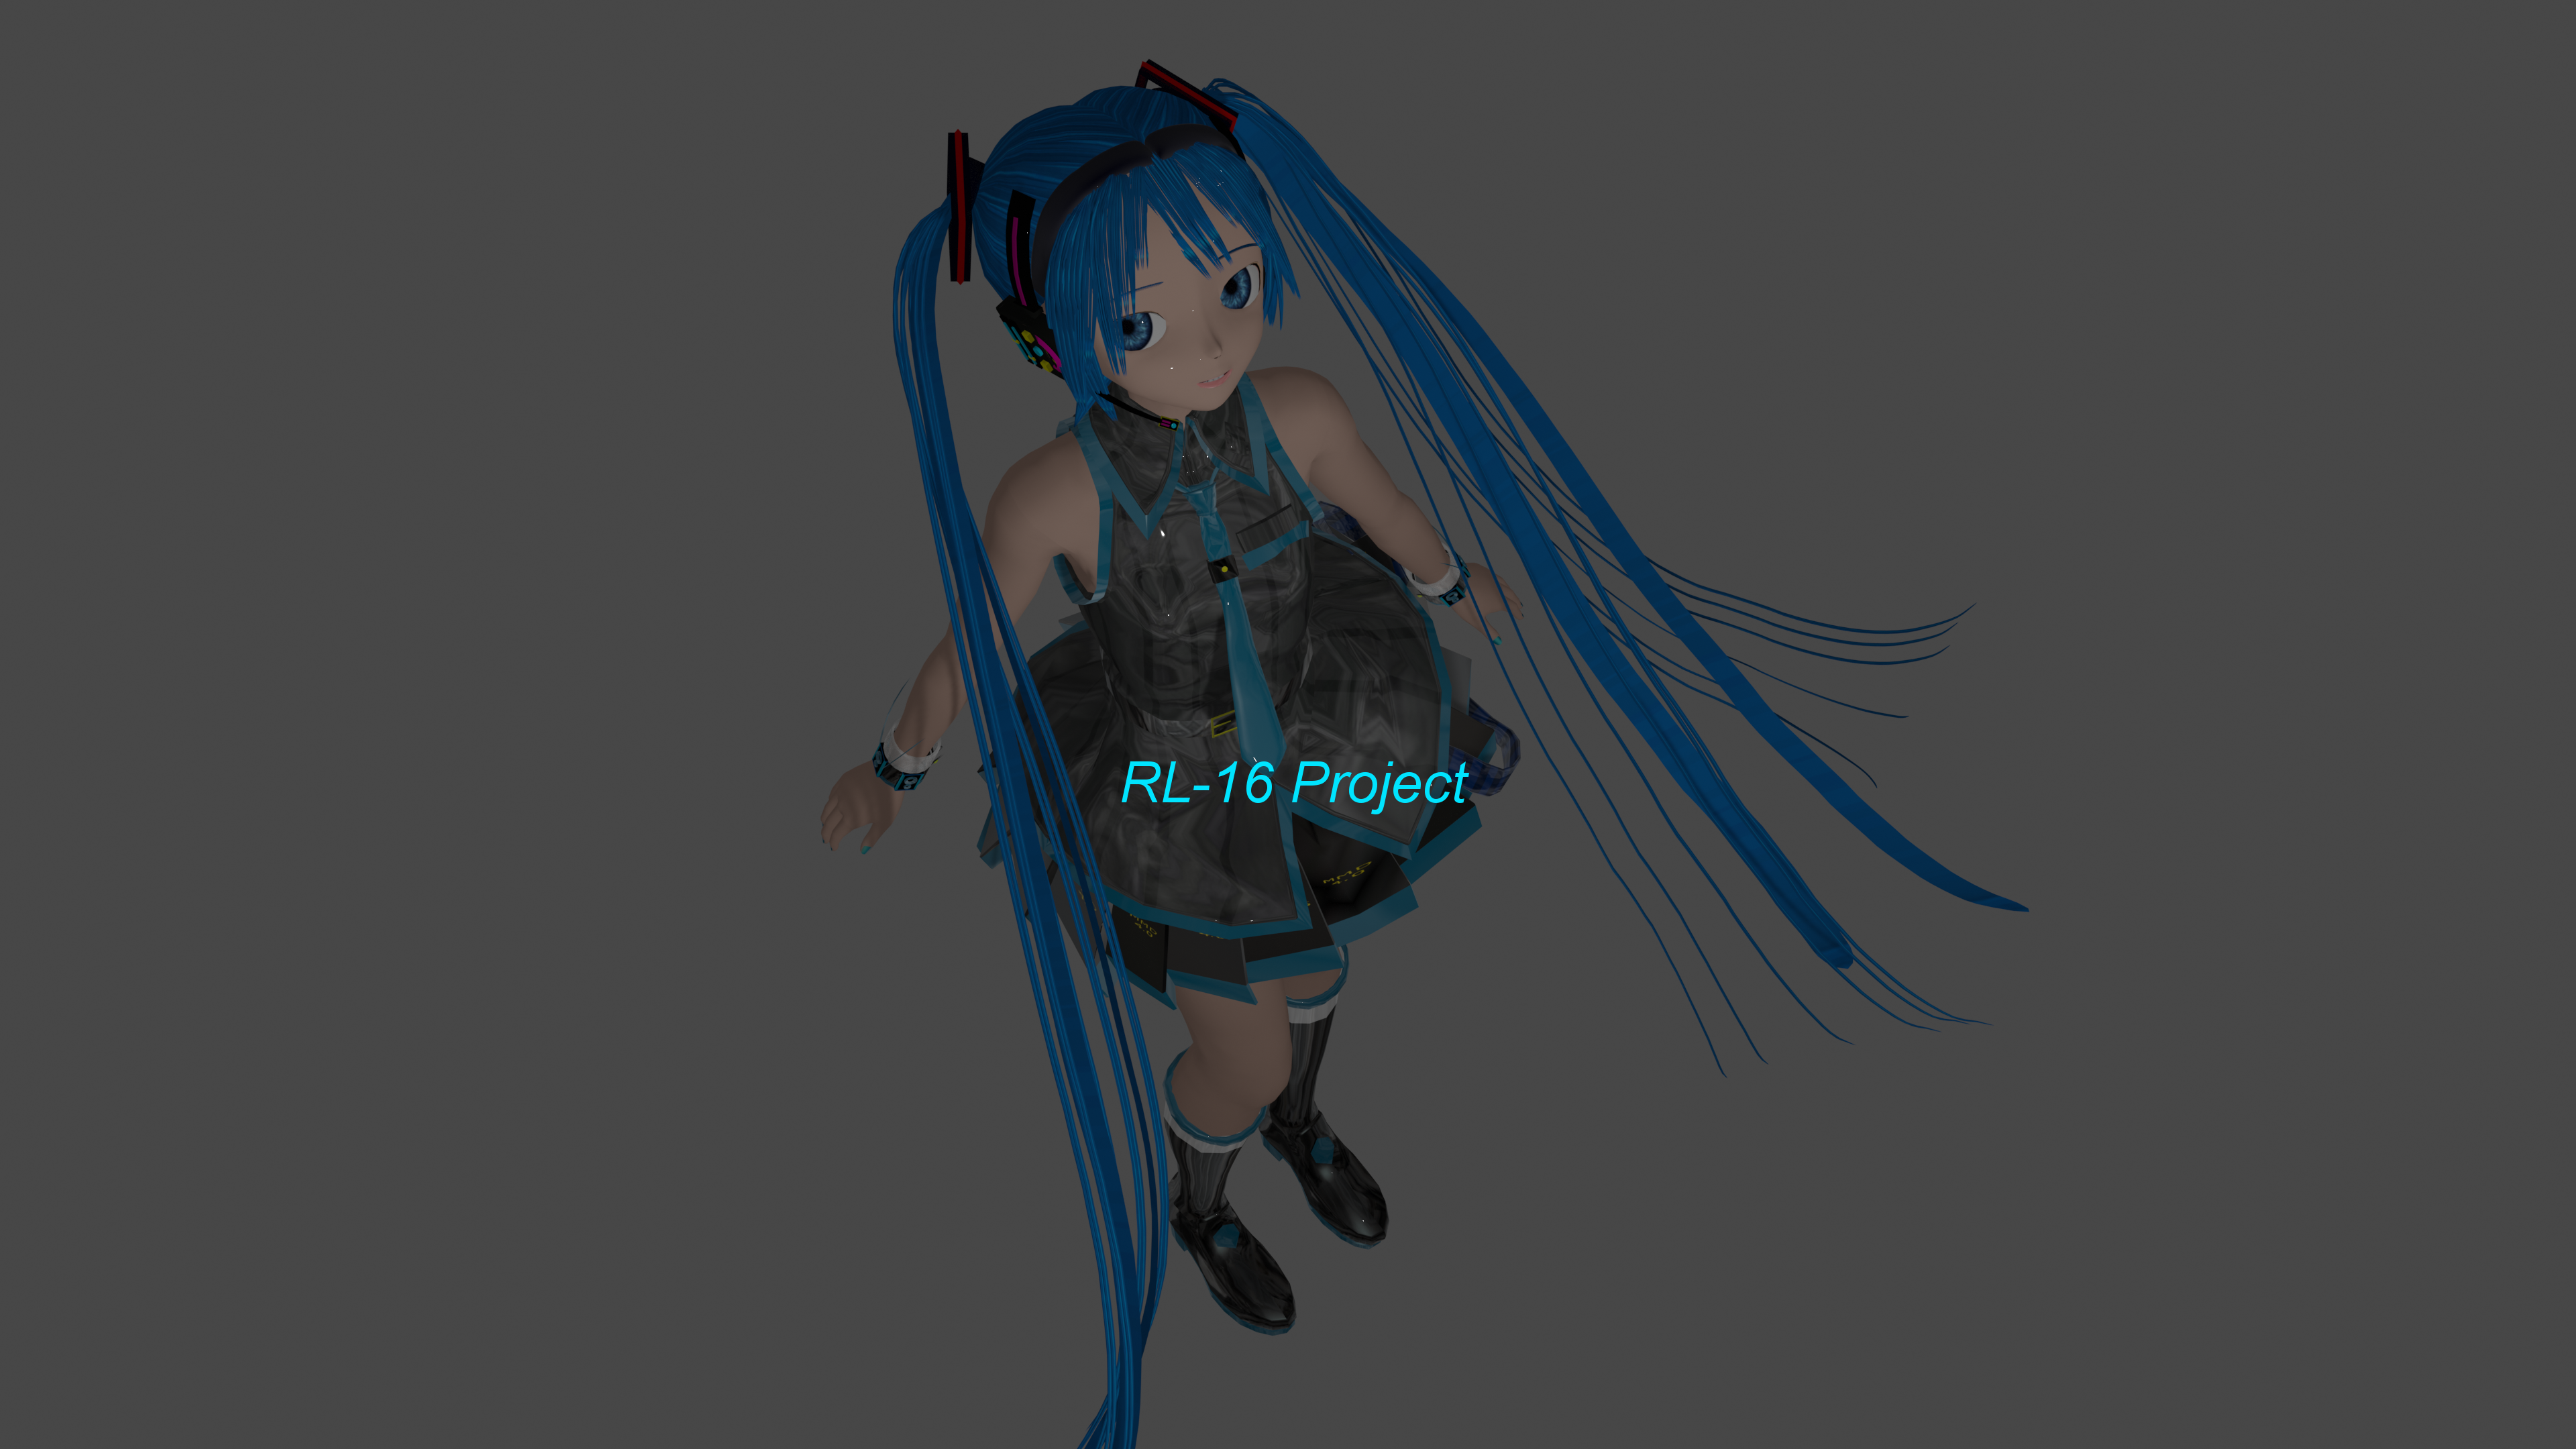 Hatsune Miku Blender Blender 3d Blue Hair 3840x2160